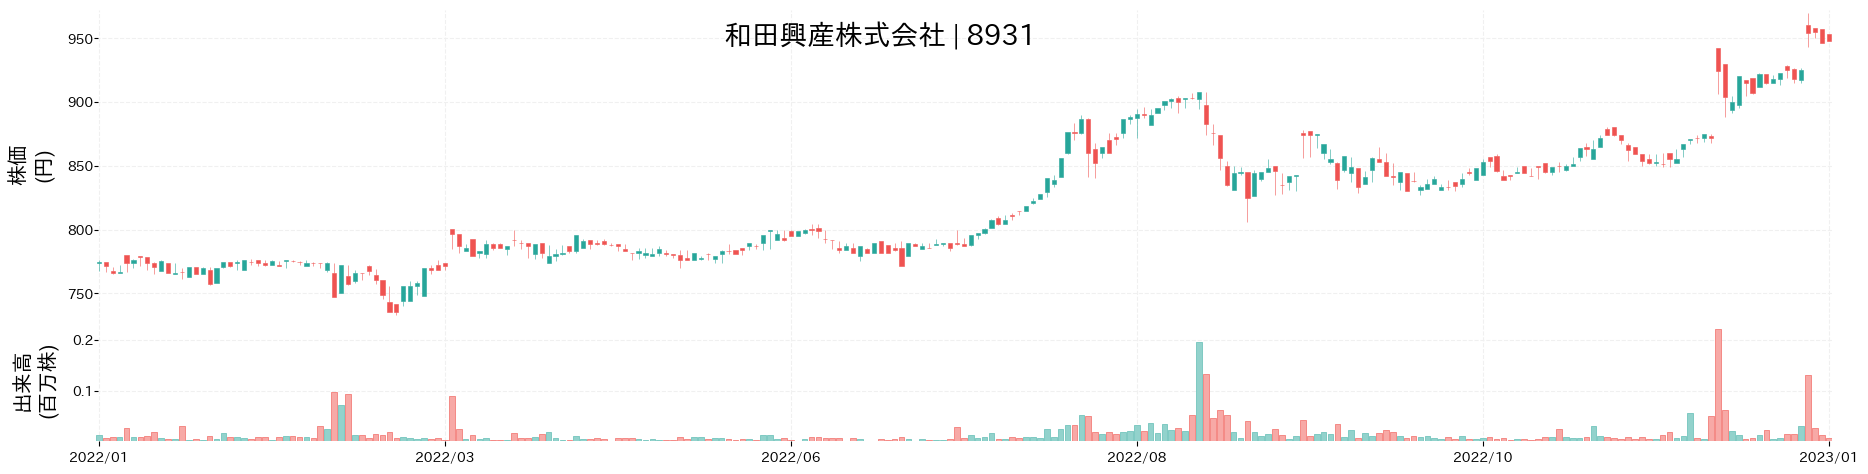 和田興産の株価推移(2022)